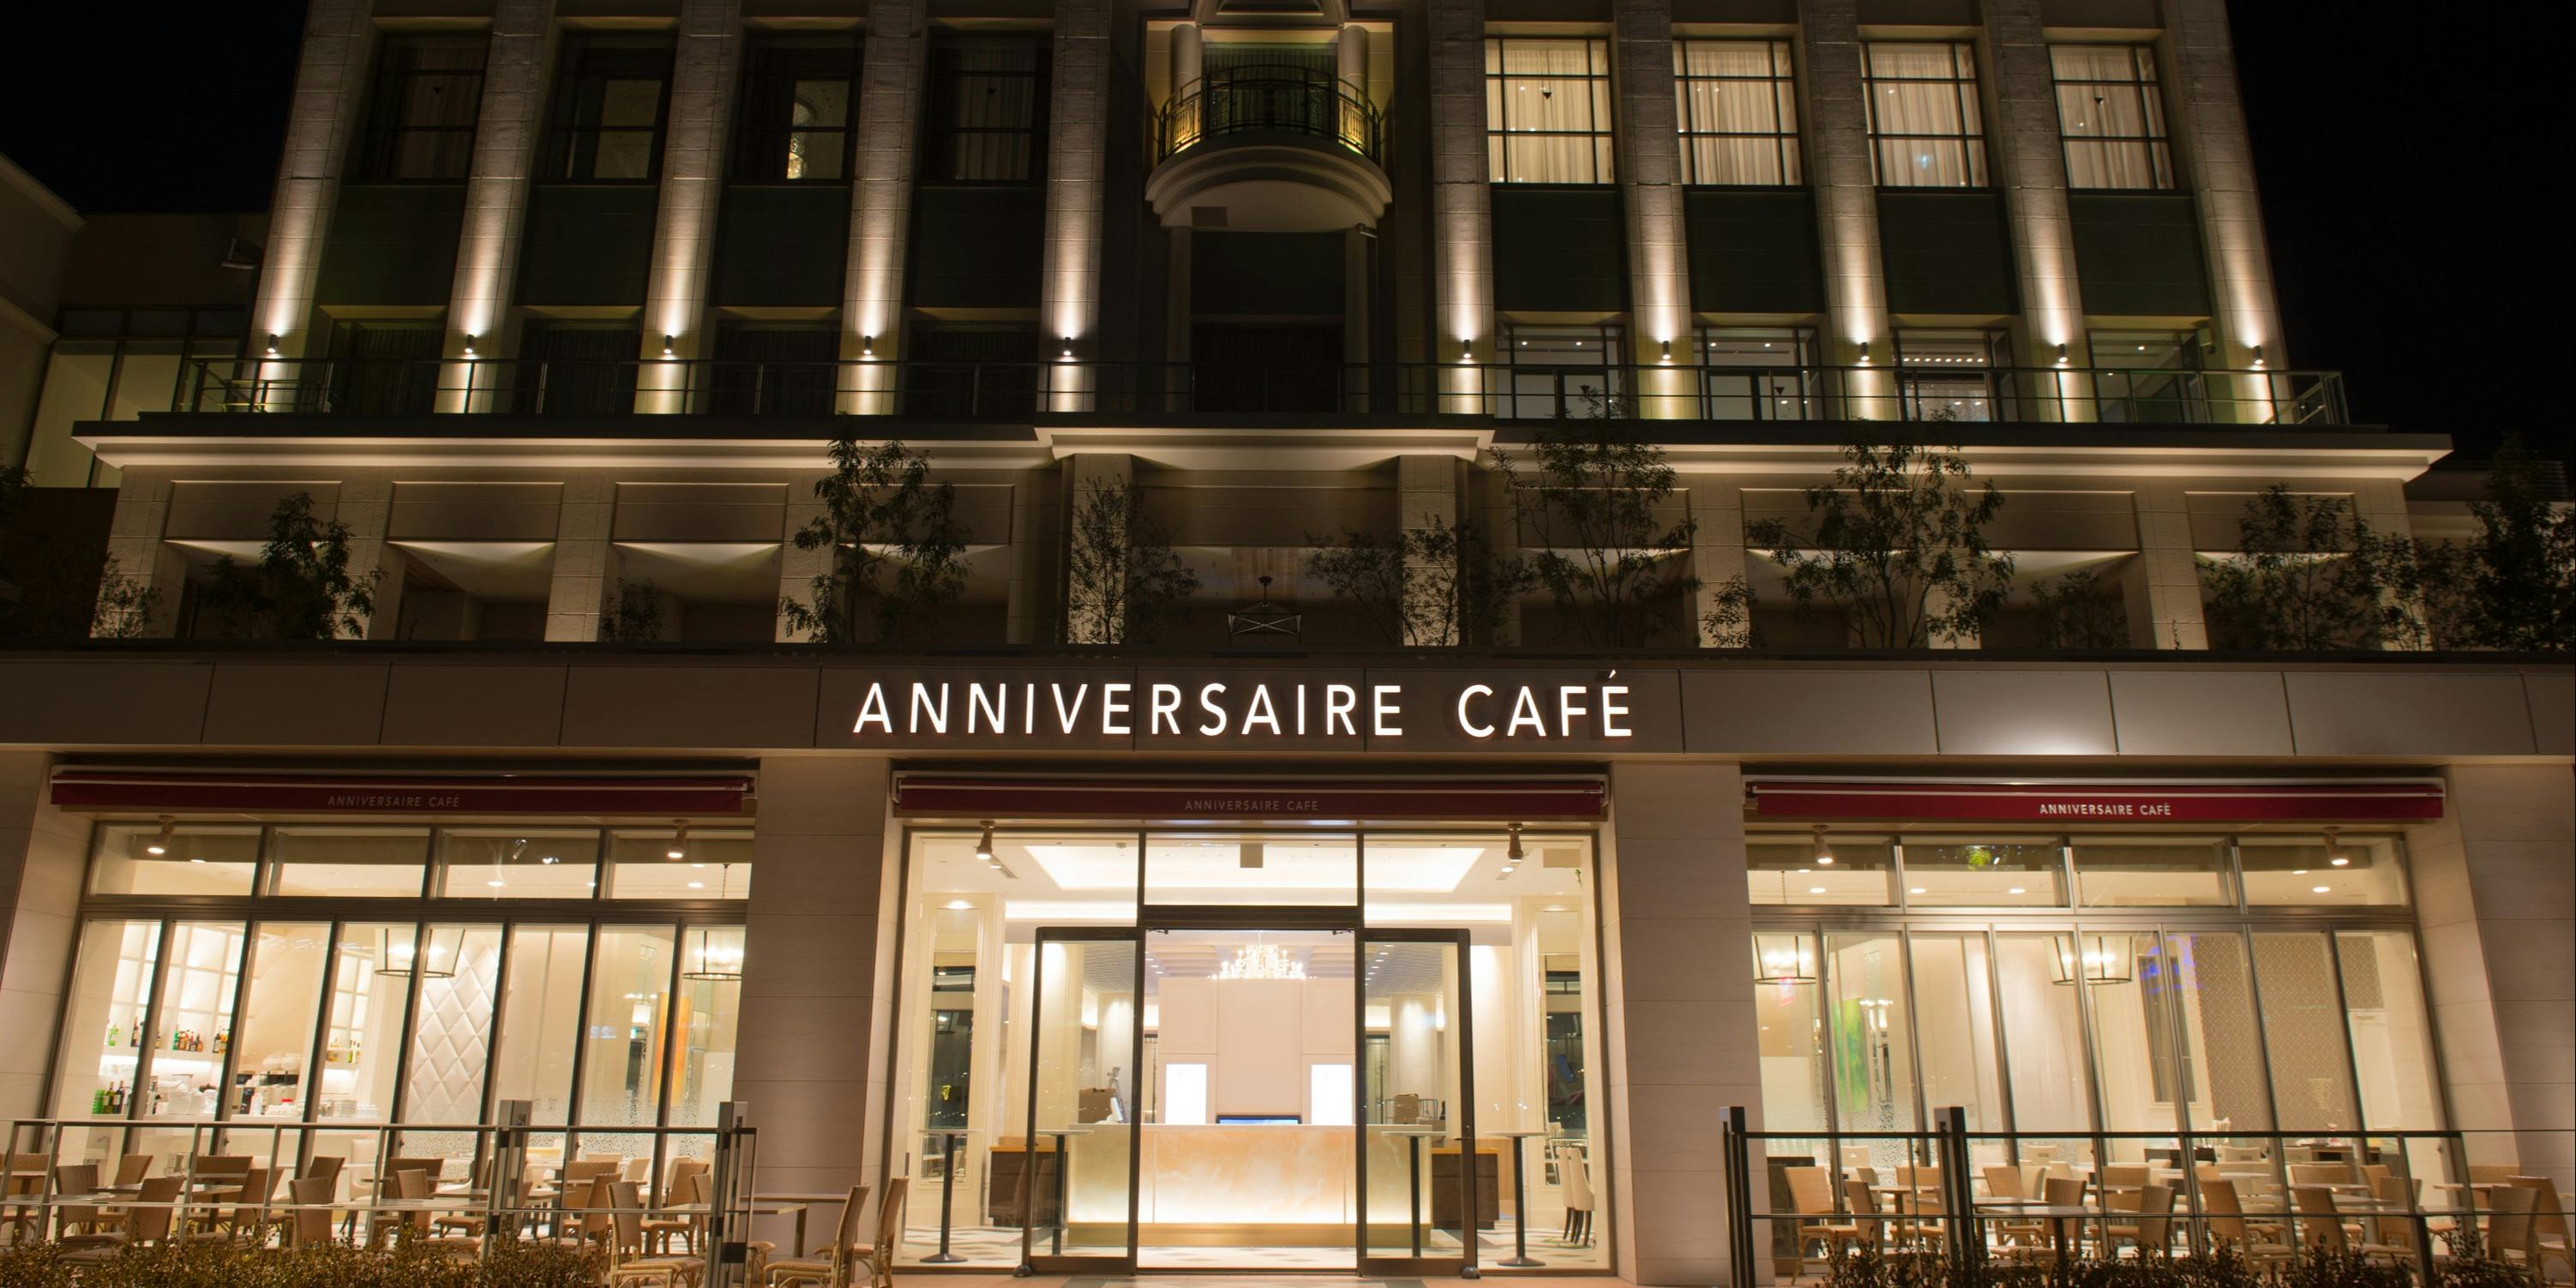 アニヴェルセル カフェ みなとみらい横浜 アニヴェルセル カフェ ミナトミライヨコハマ みなとみらい フランス料理 カフェ 一休 Comレストラン